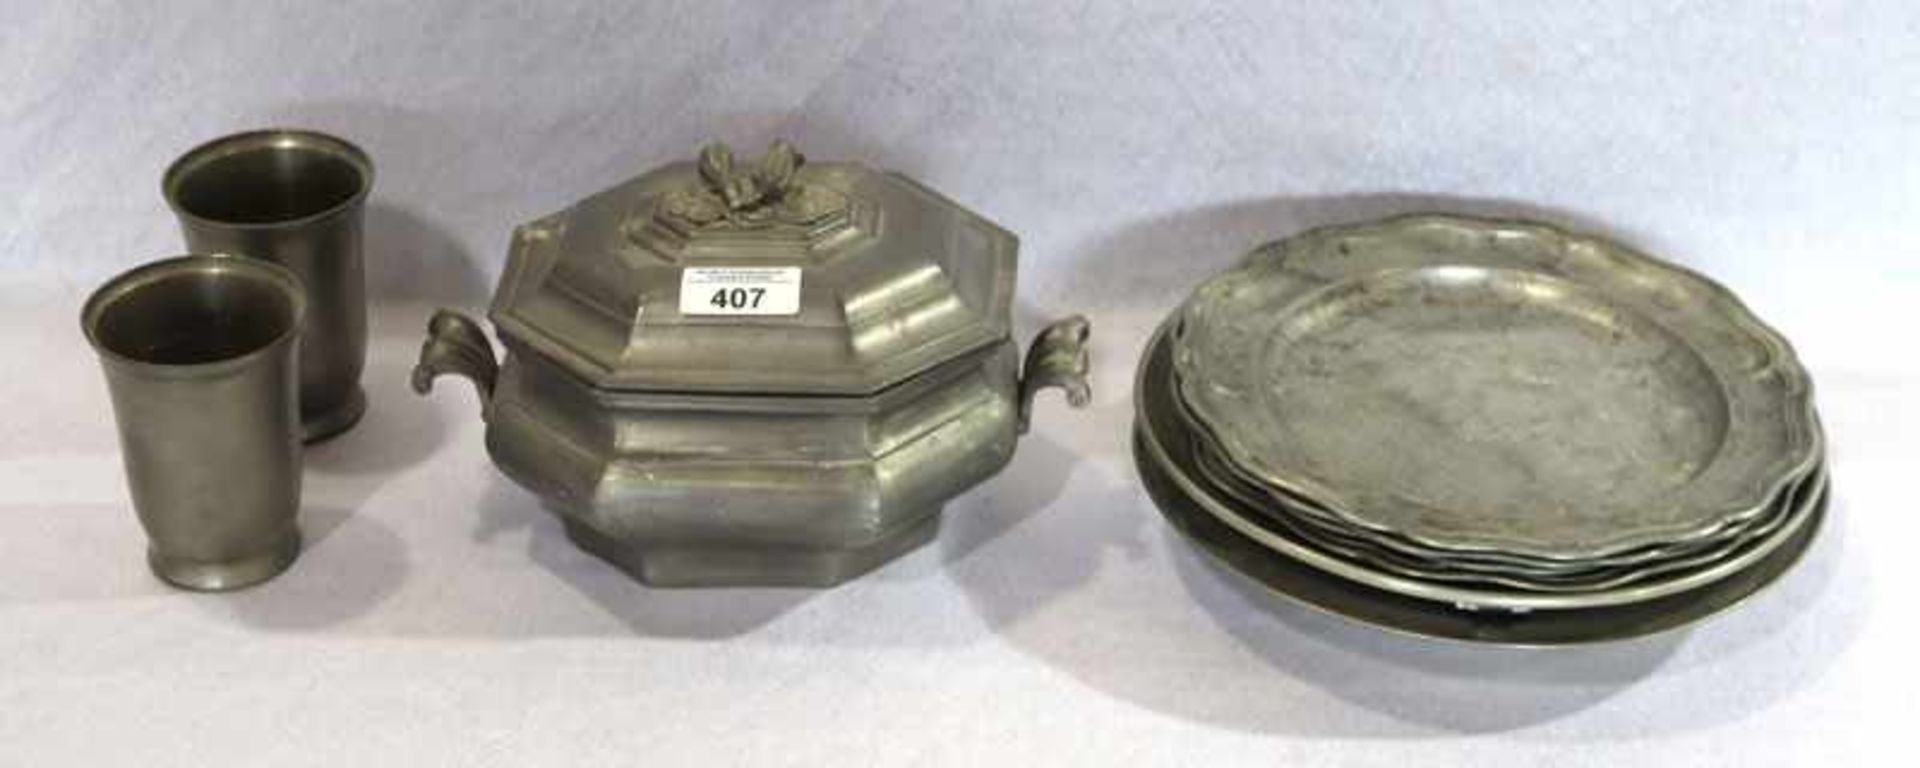 Zinn-Konvolut: 4 Teller, 2 Keramikteller mit Zinnrand, Terrine, 2 Schnapsbecher, 2 Becher und 4